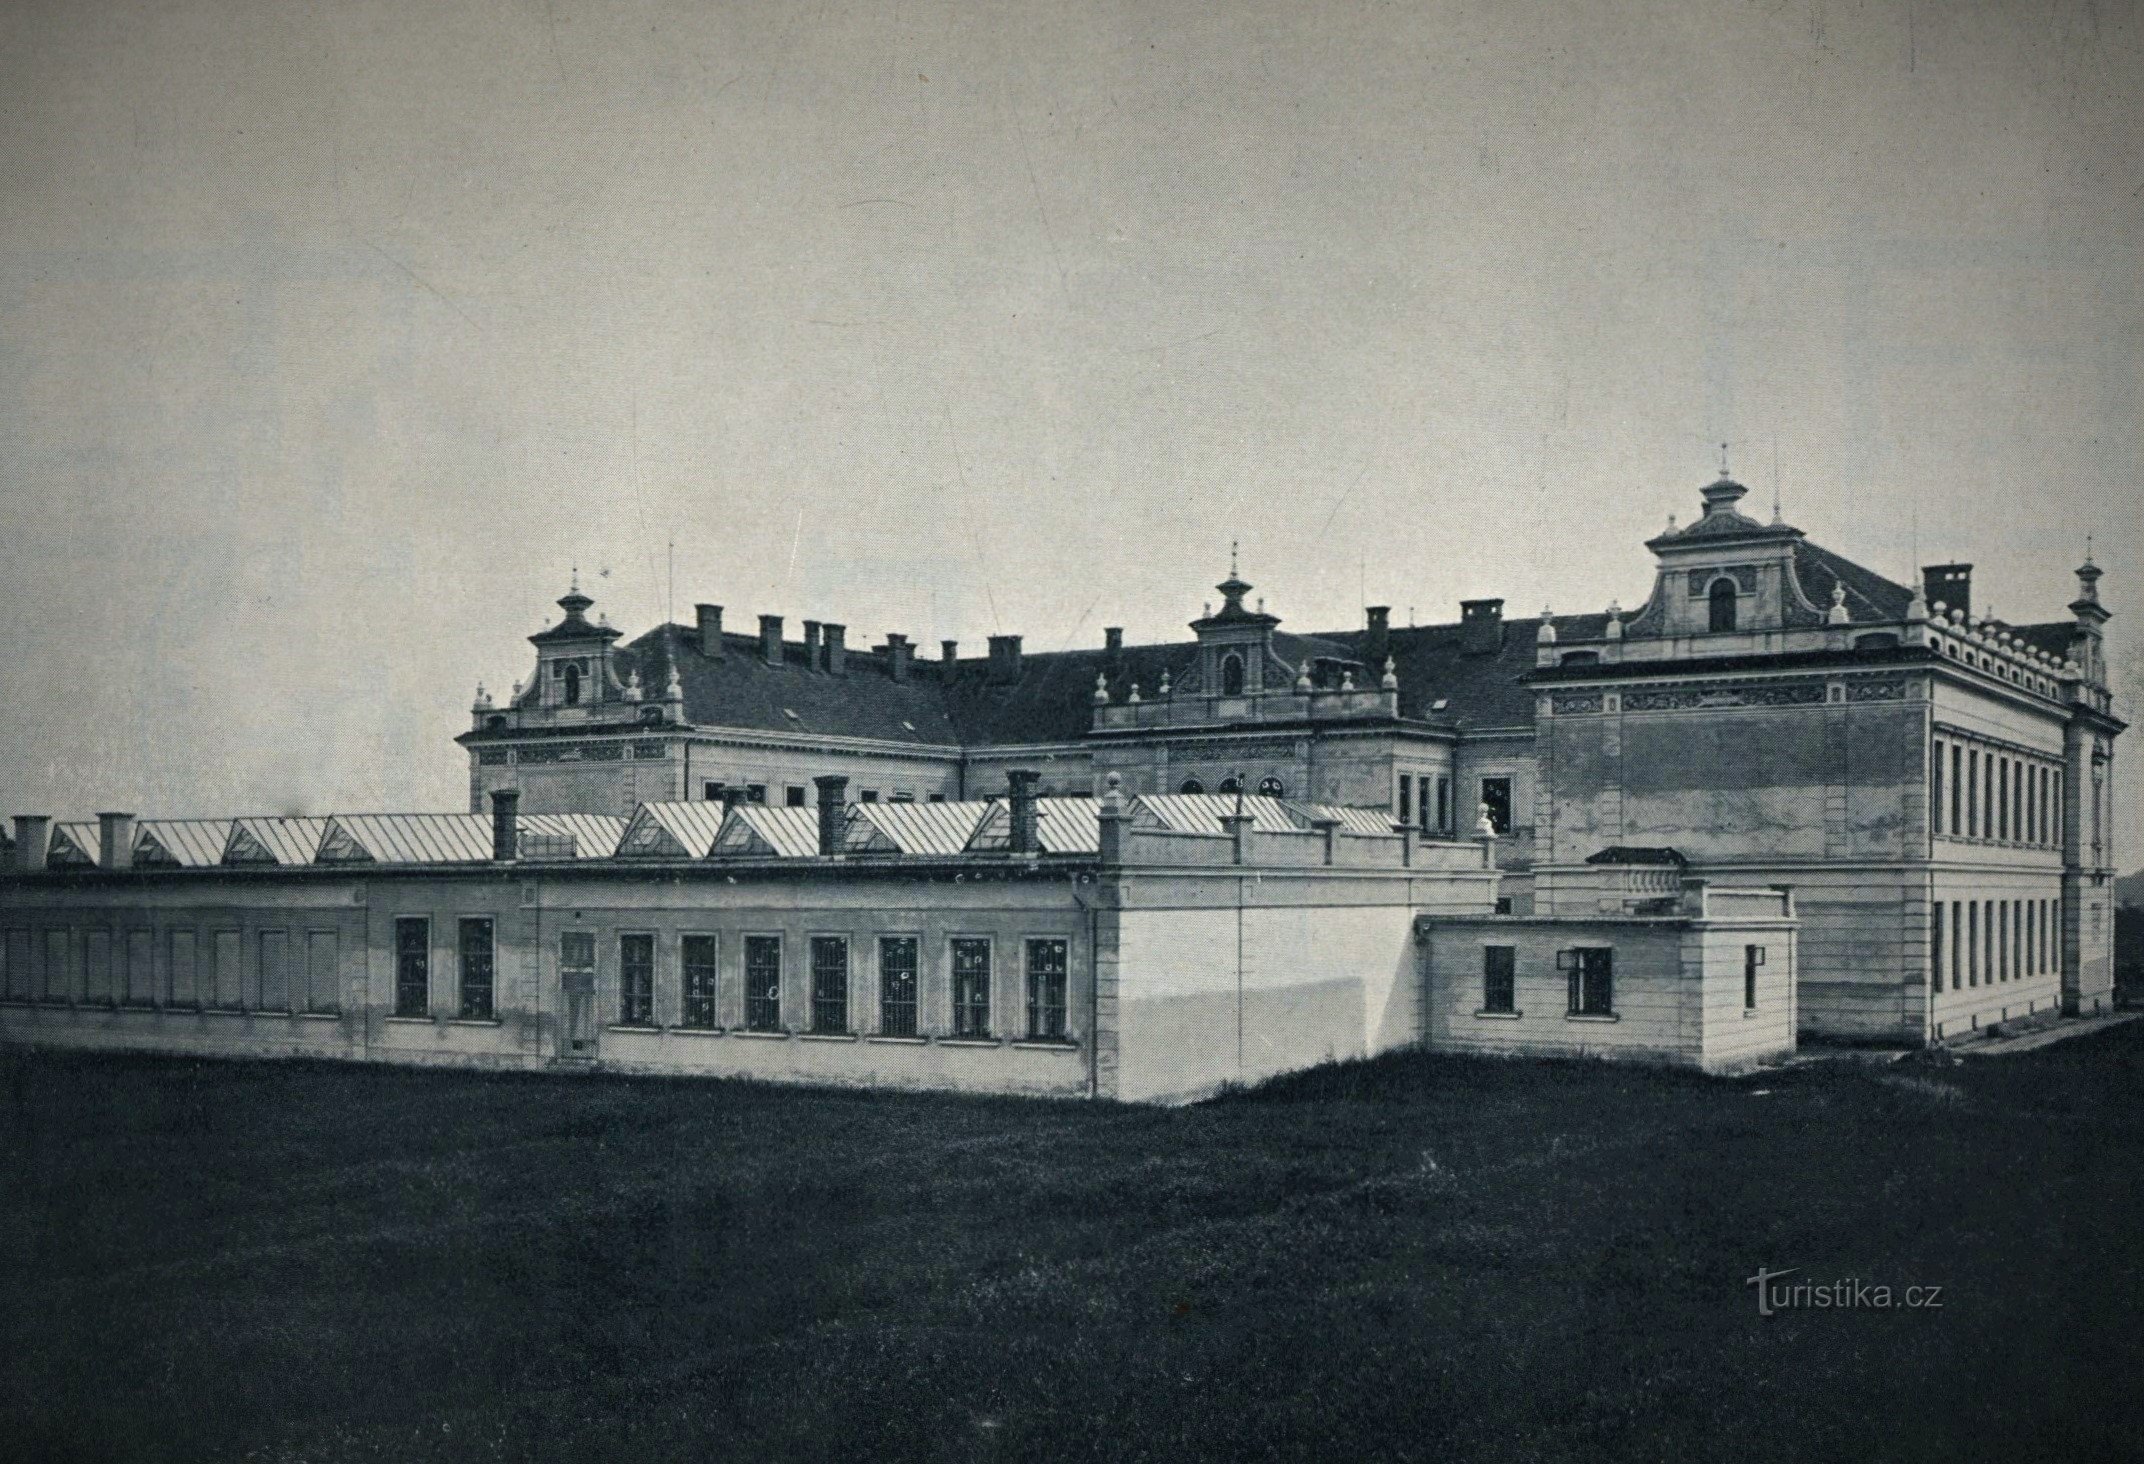 C. k. splošna obrtna šola (Jaroměř, 1904)